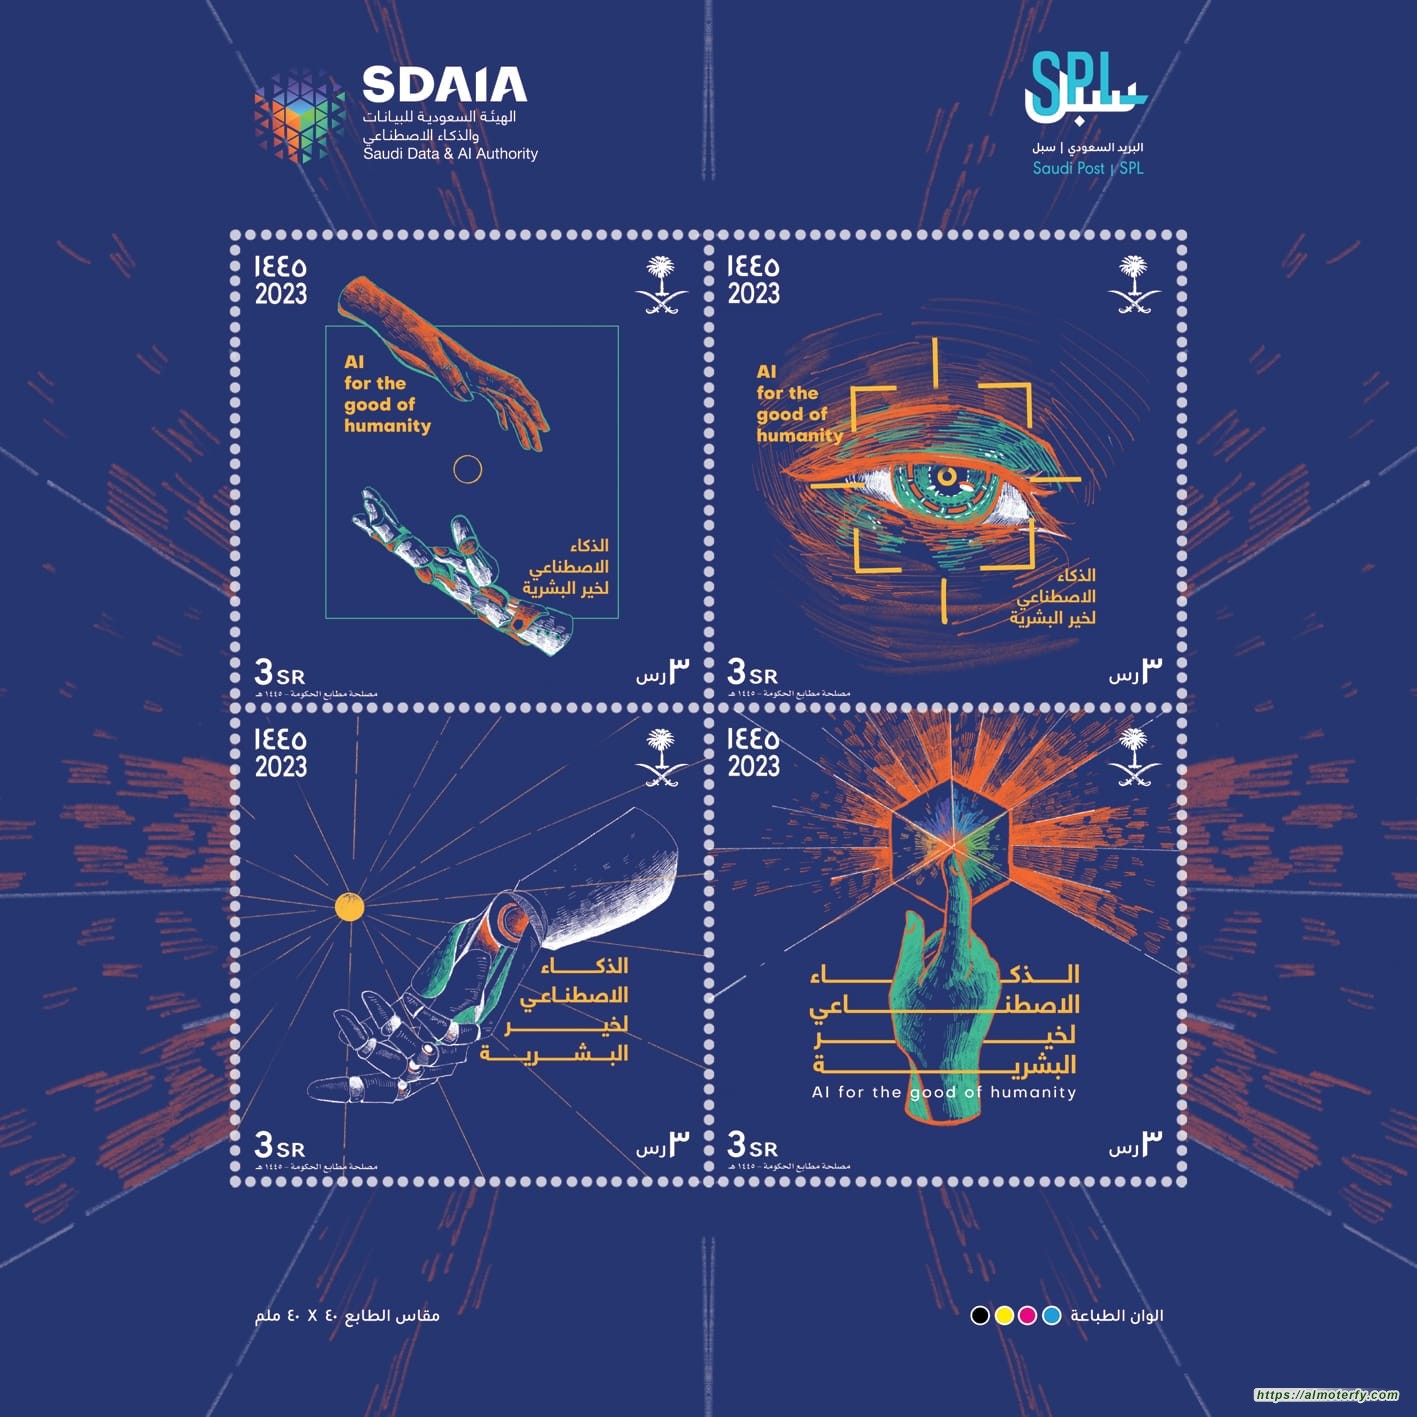 البريد السعودي | سبل يصدر طابعا تذكاريا للهيئة السعودية للبيانات والذكاء الاصطناعي "سدايا"